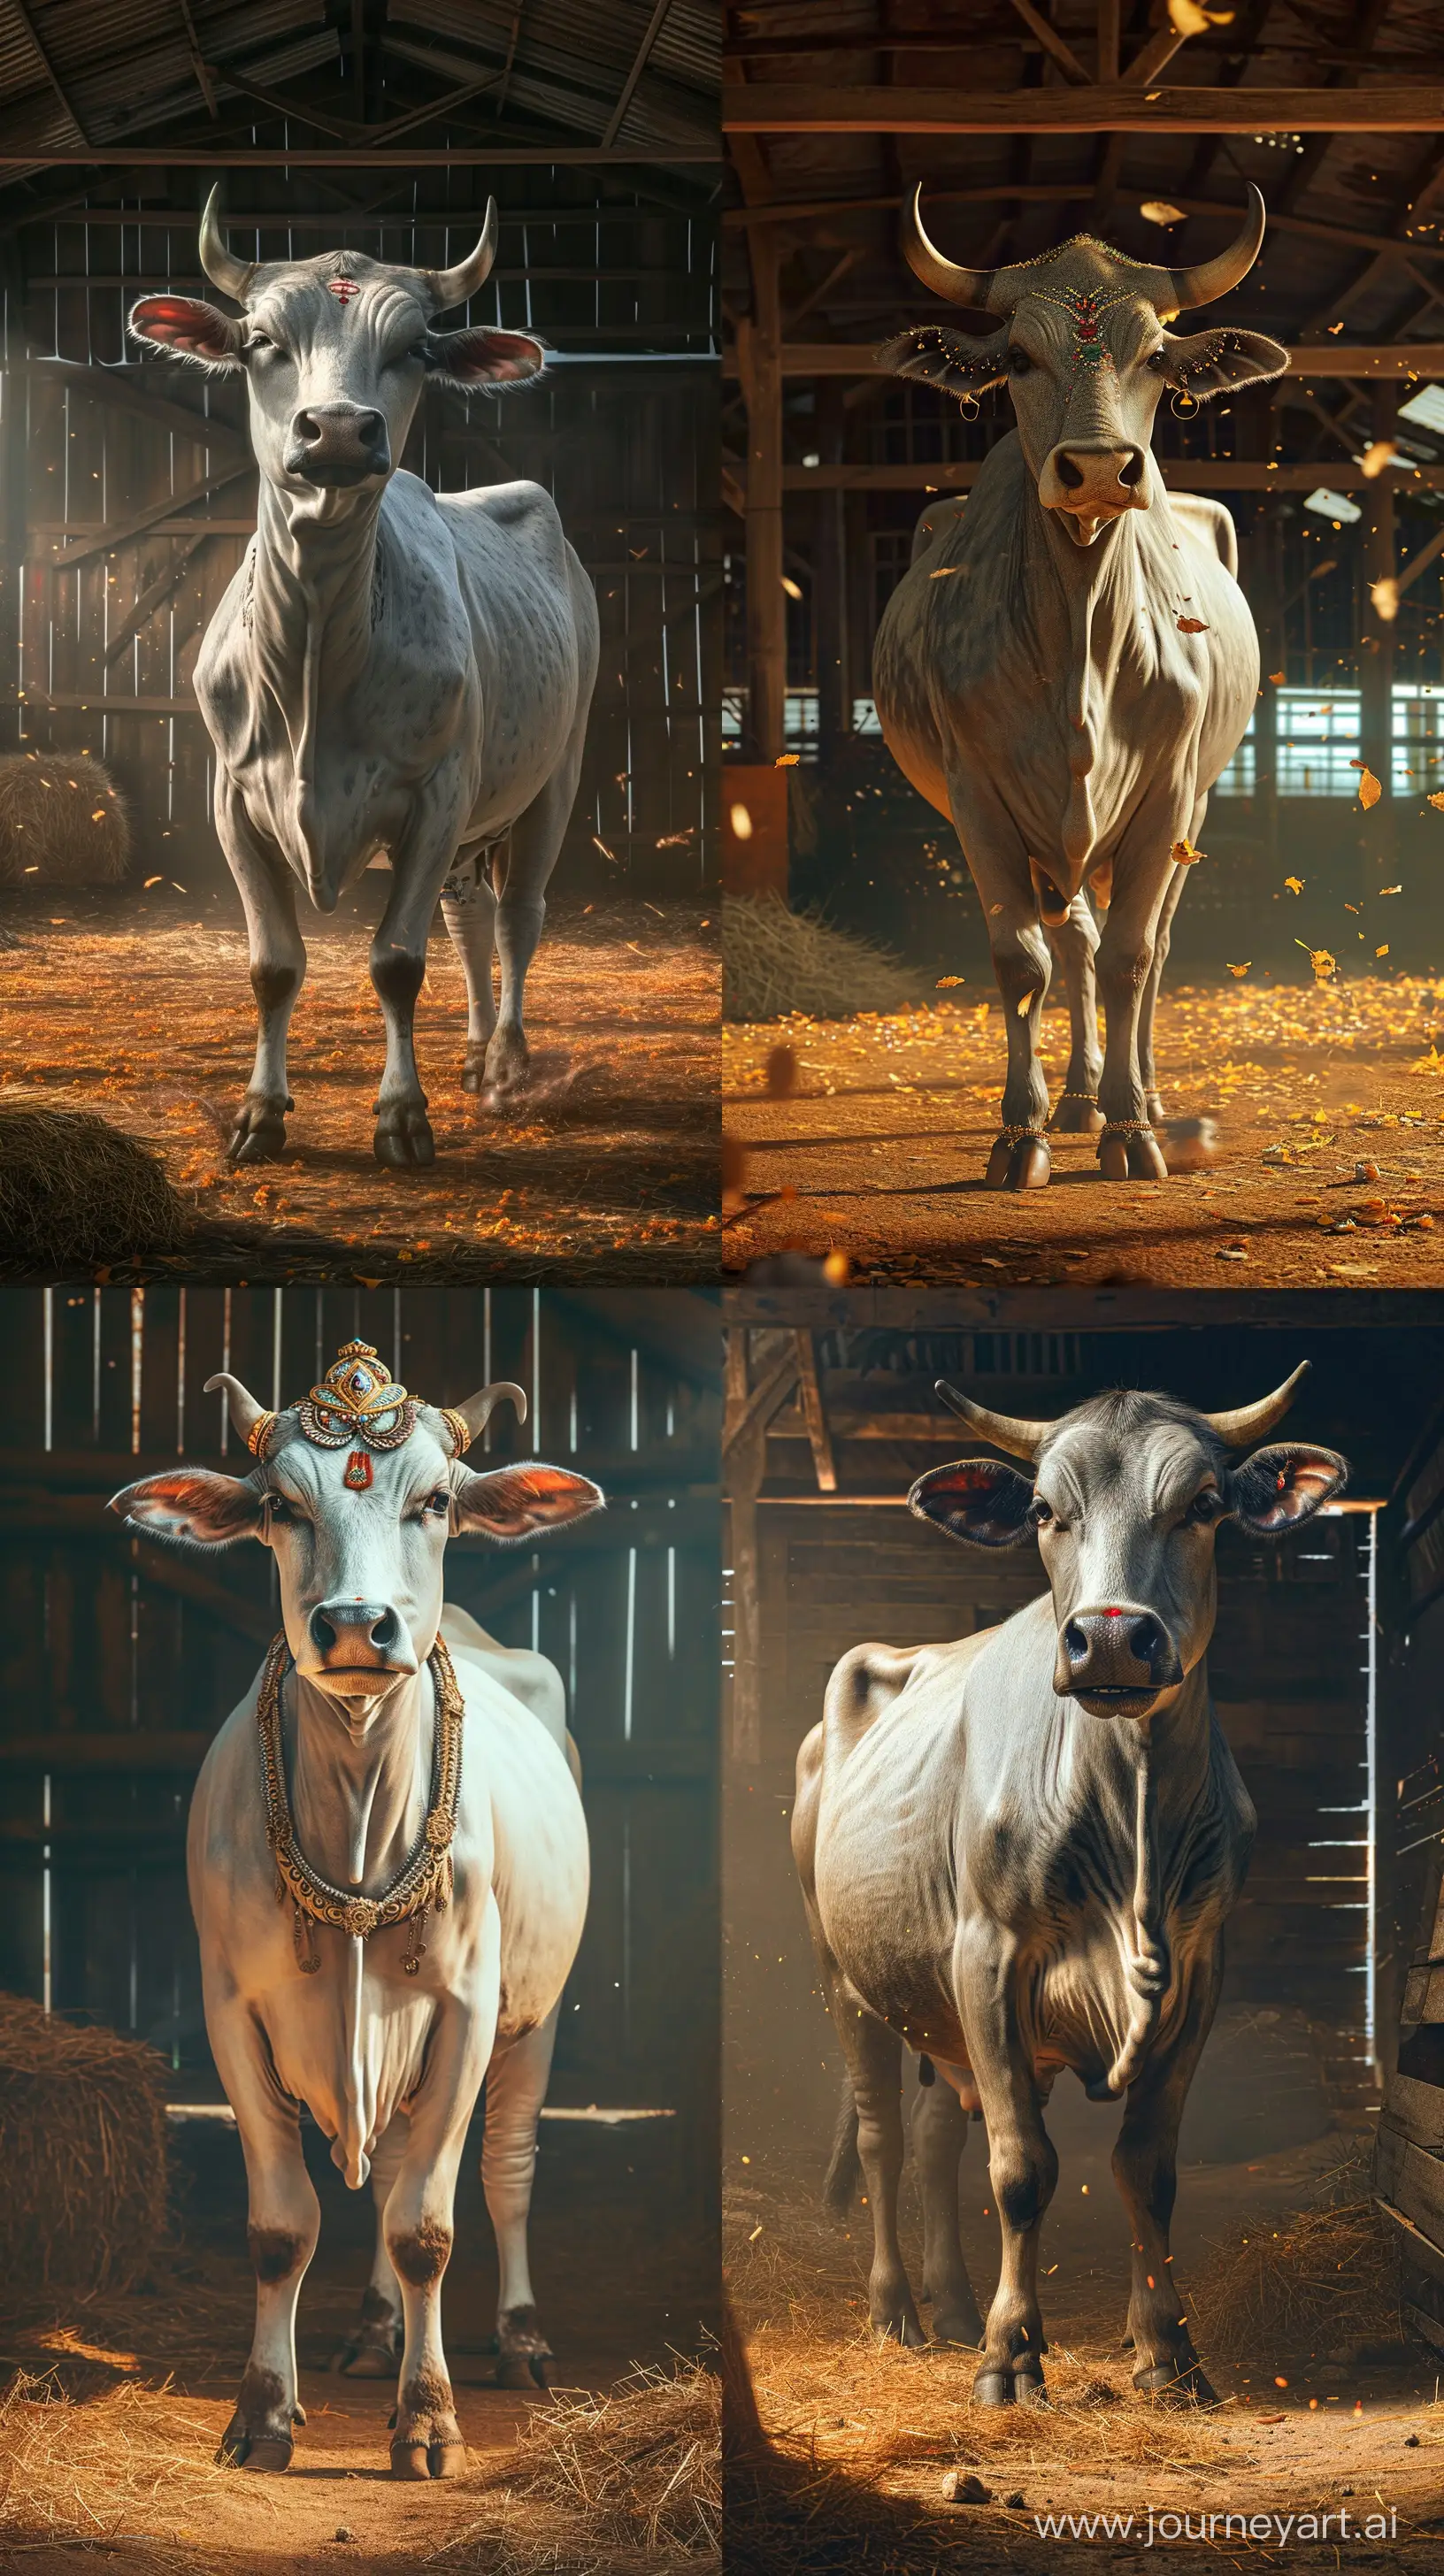 Divine-Cow-Kamadhenu-in-Serene-Barn-Setting